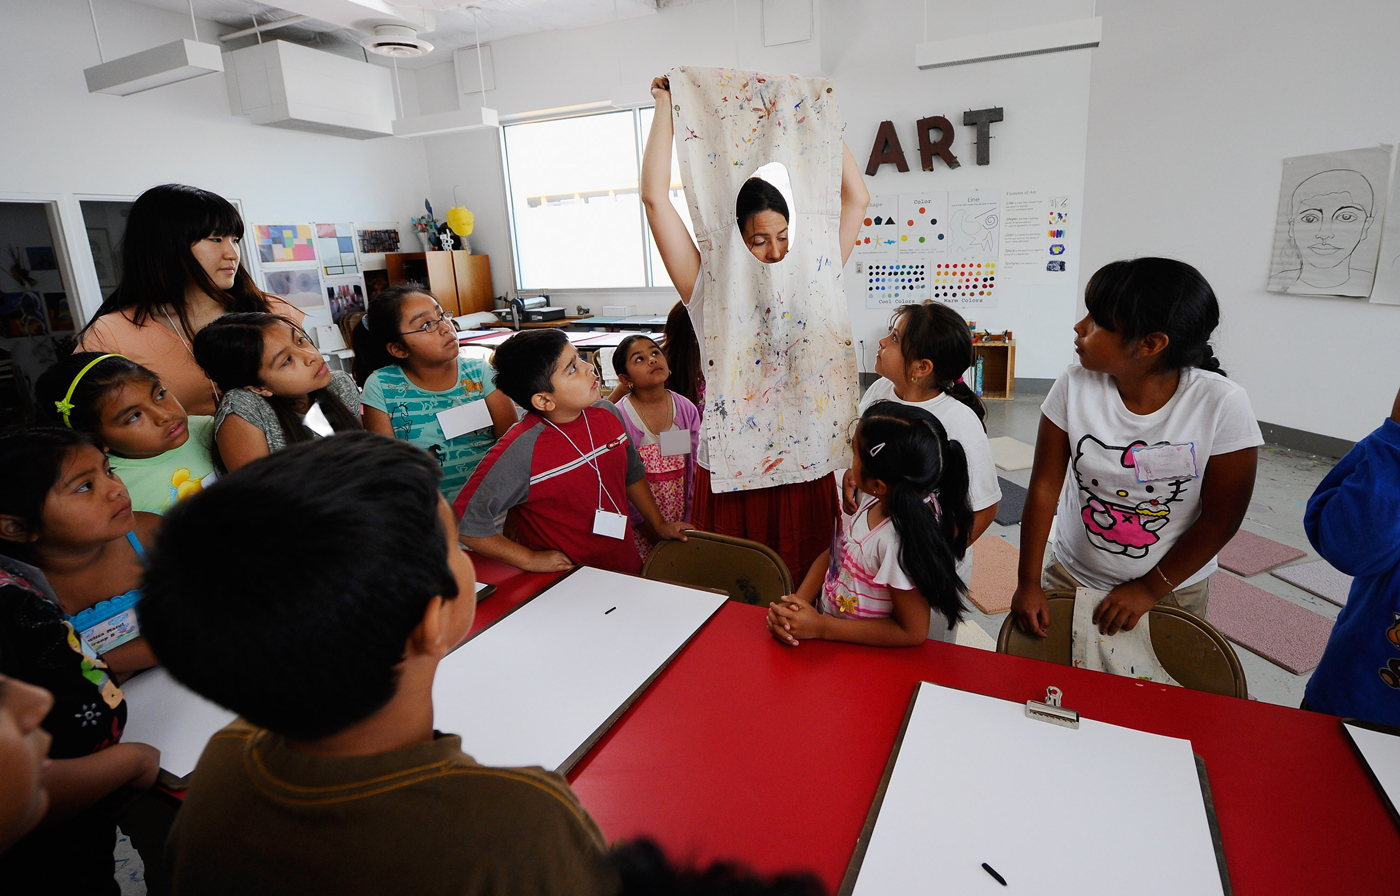 Artist works with children